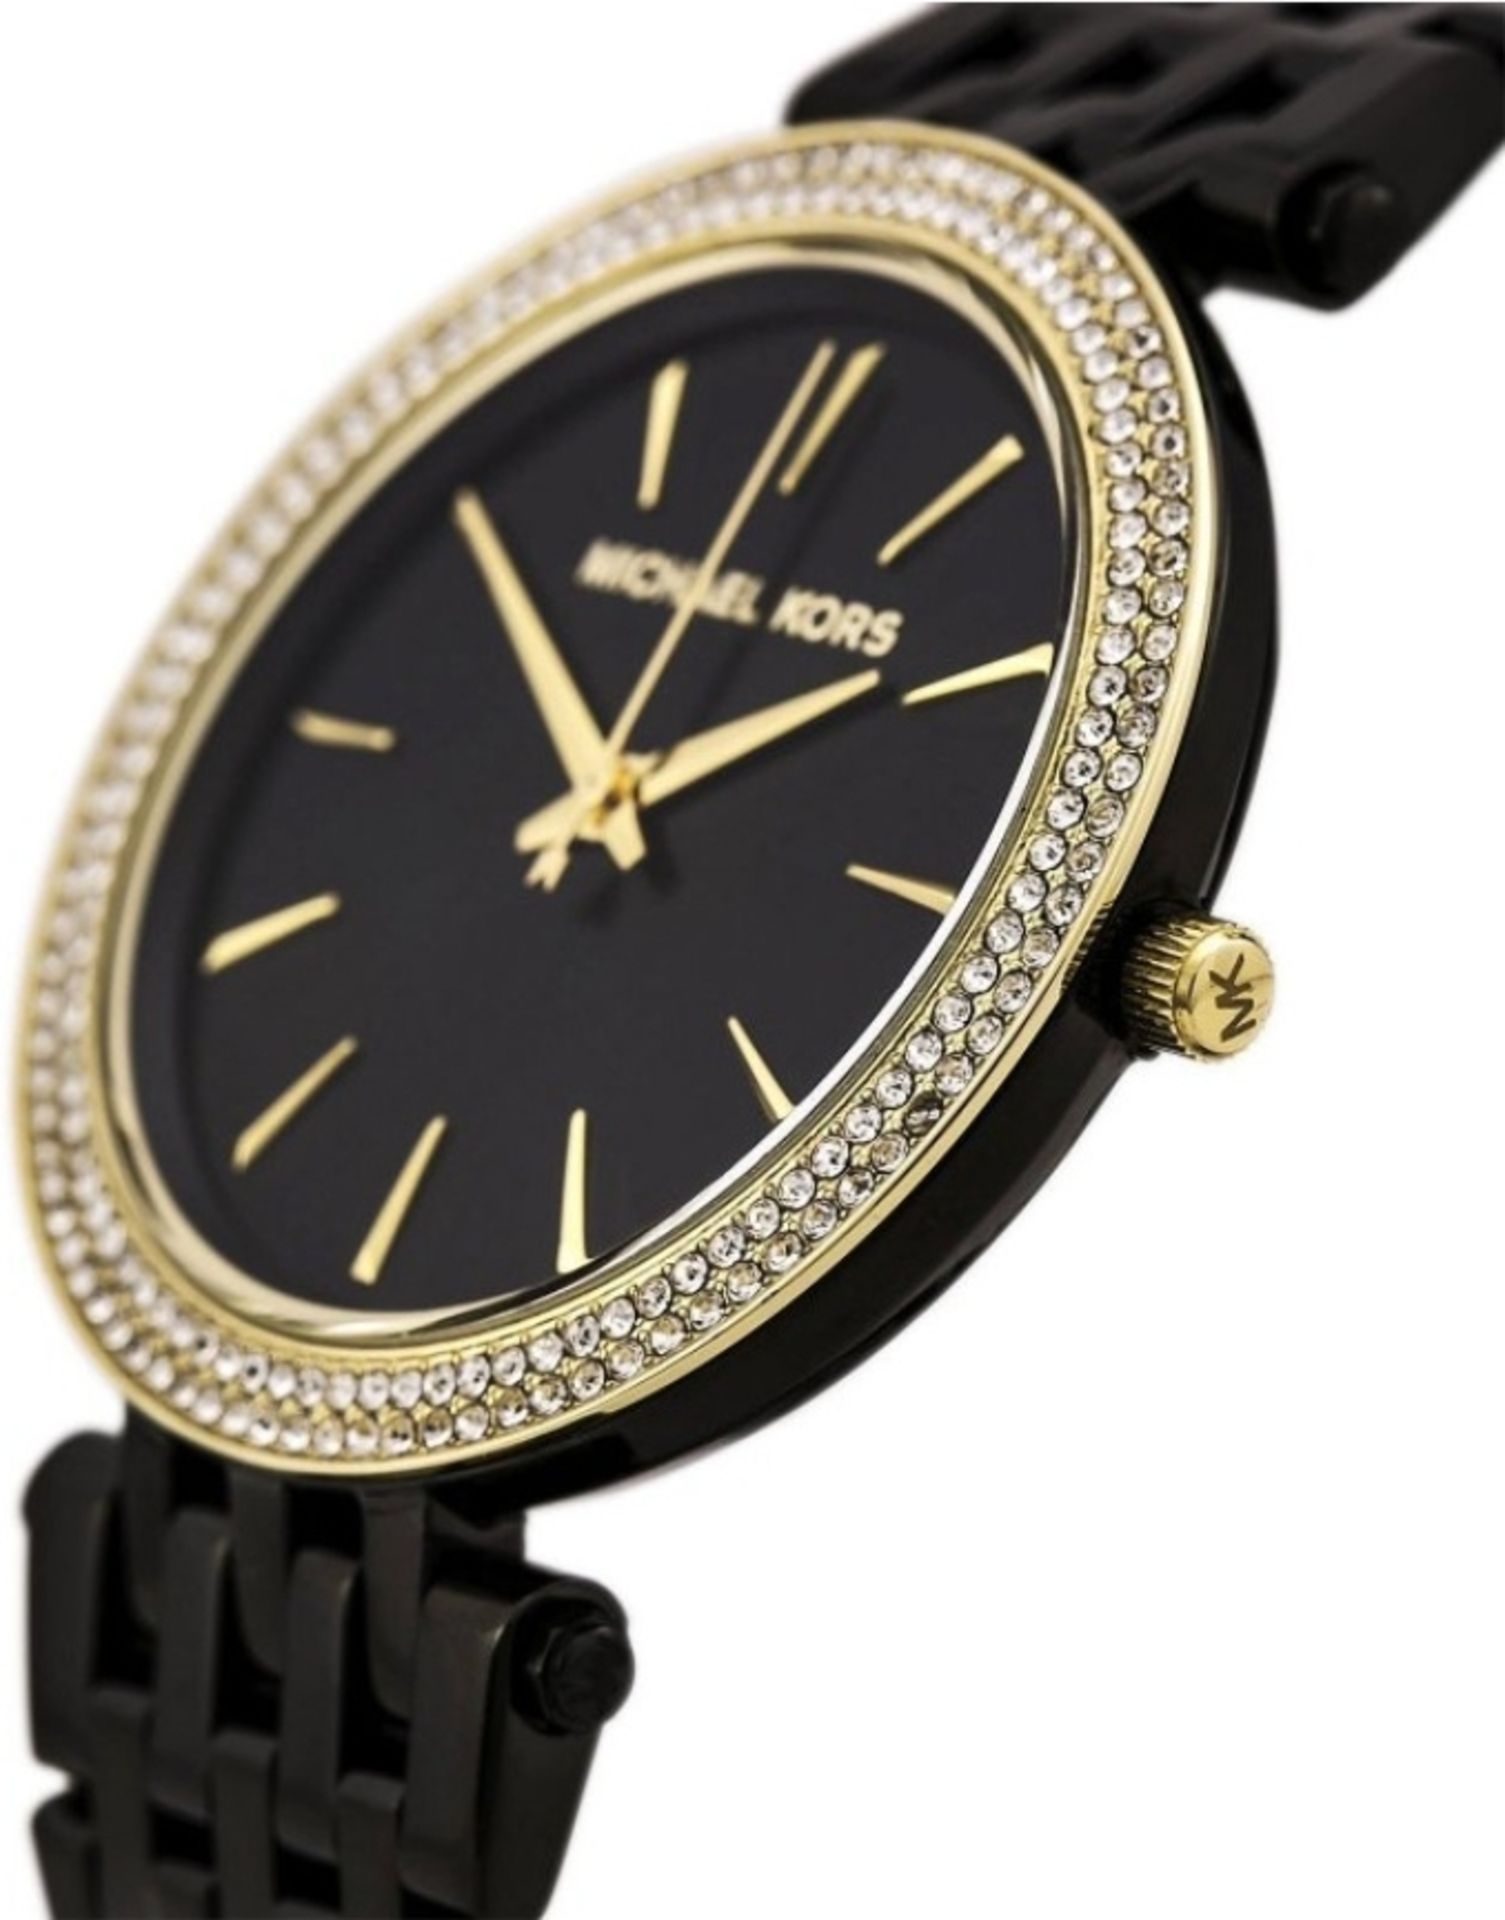 Michael Kors MK3322 Darci Gold & Black Stainless Steel Ladies Watch - Image 4 of 7